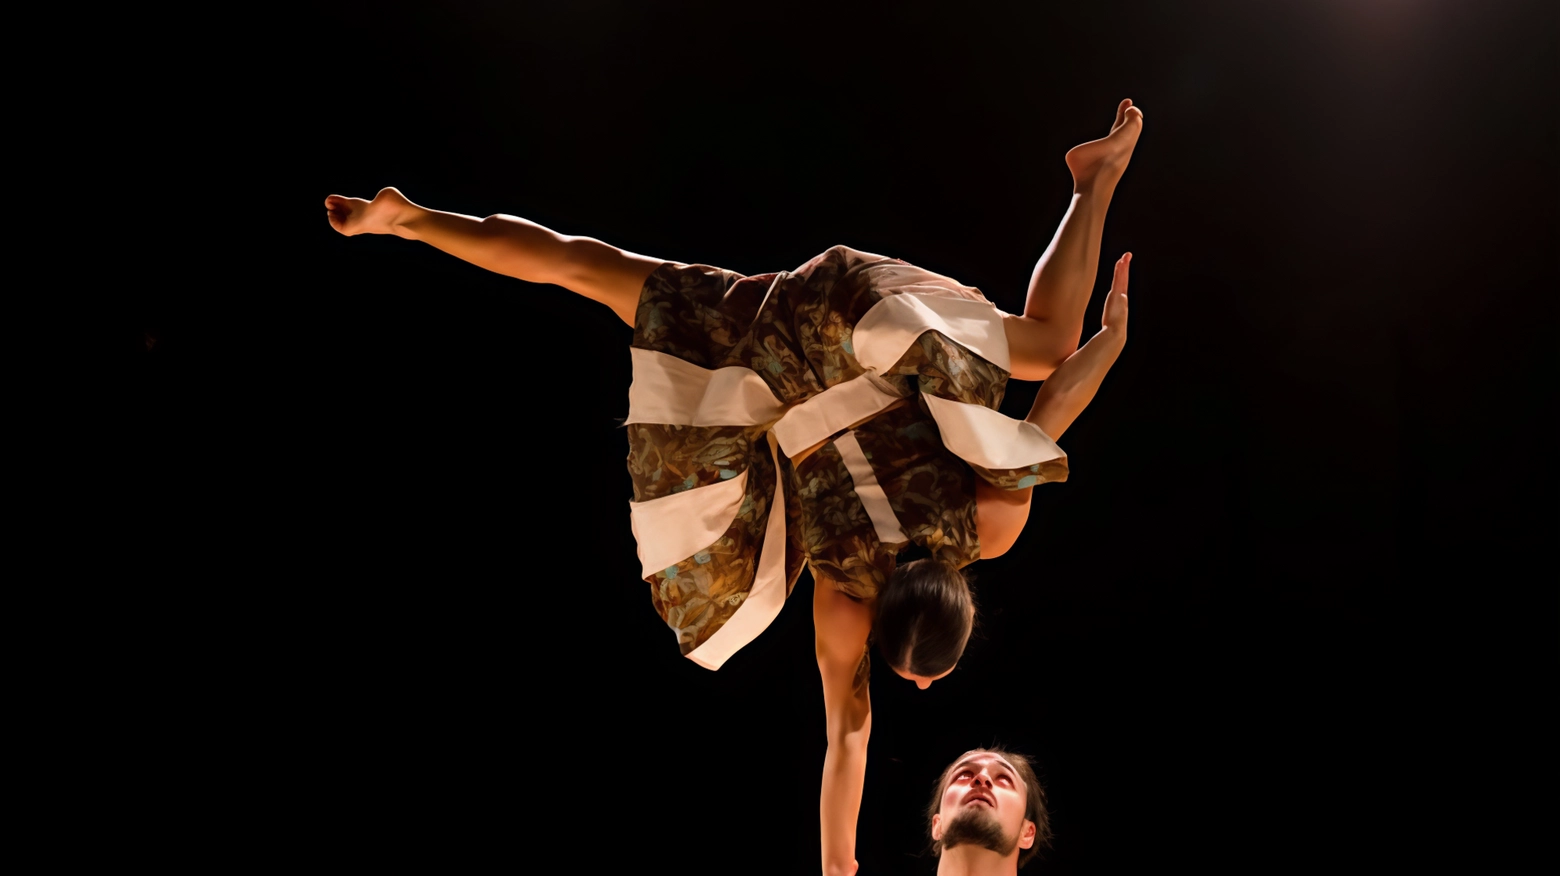 Il Duo Kaos porta al Teatro Concordia di Cupramontana lo spettacolo "Flora", frutto di una residenza artistica. Con tecniche acrobatiche e coreografiche, creano un universo fantastico in cui natura e uomo si fondono.